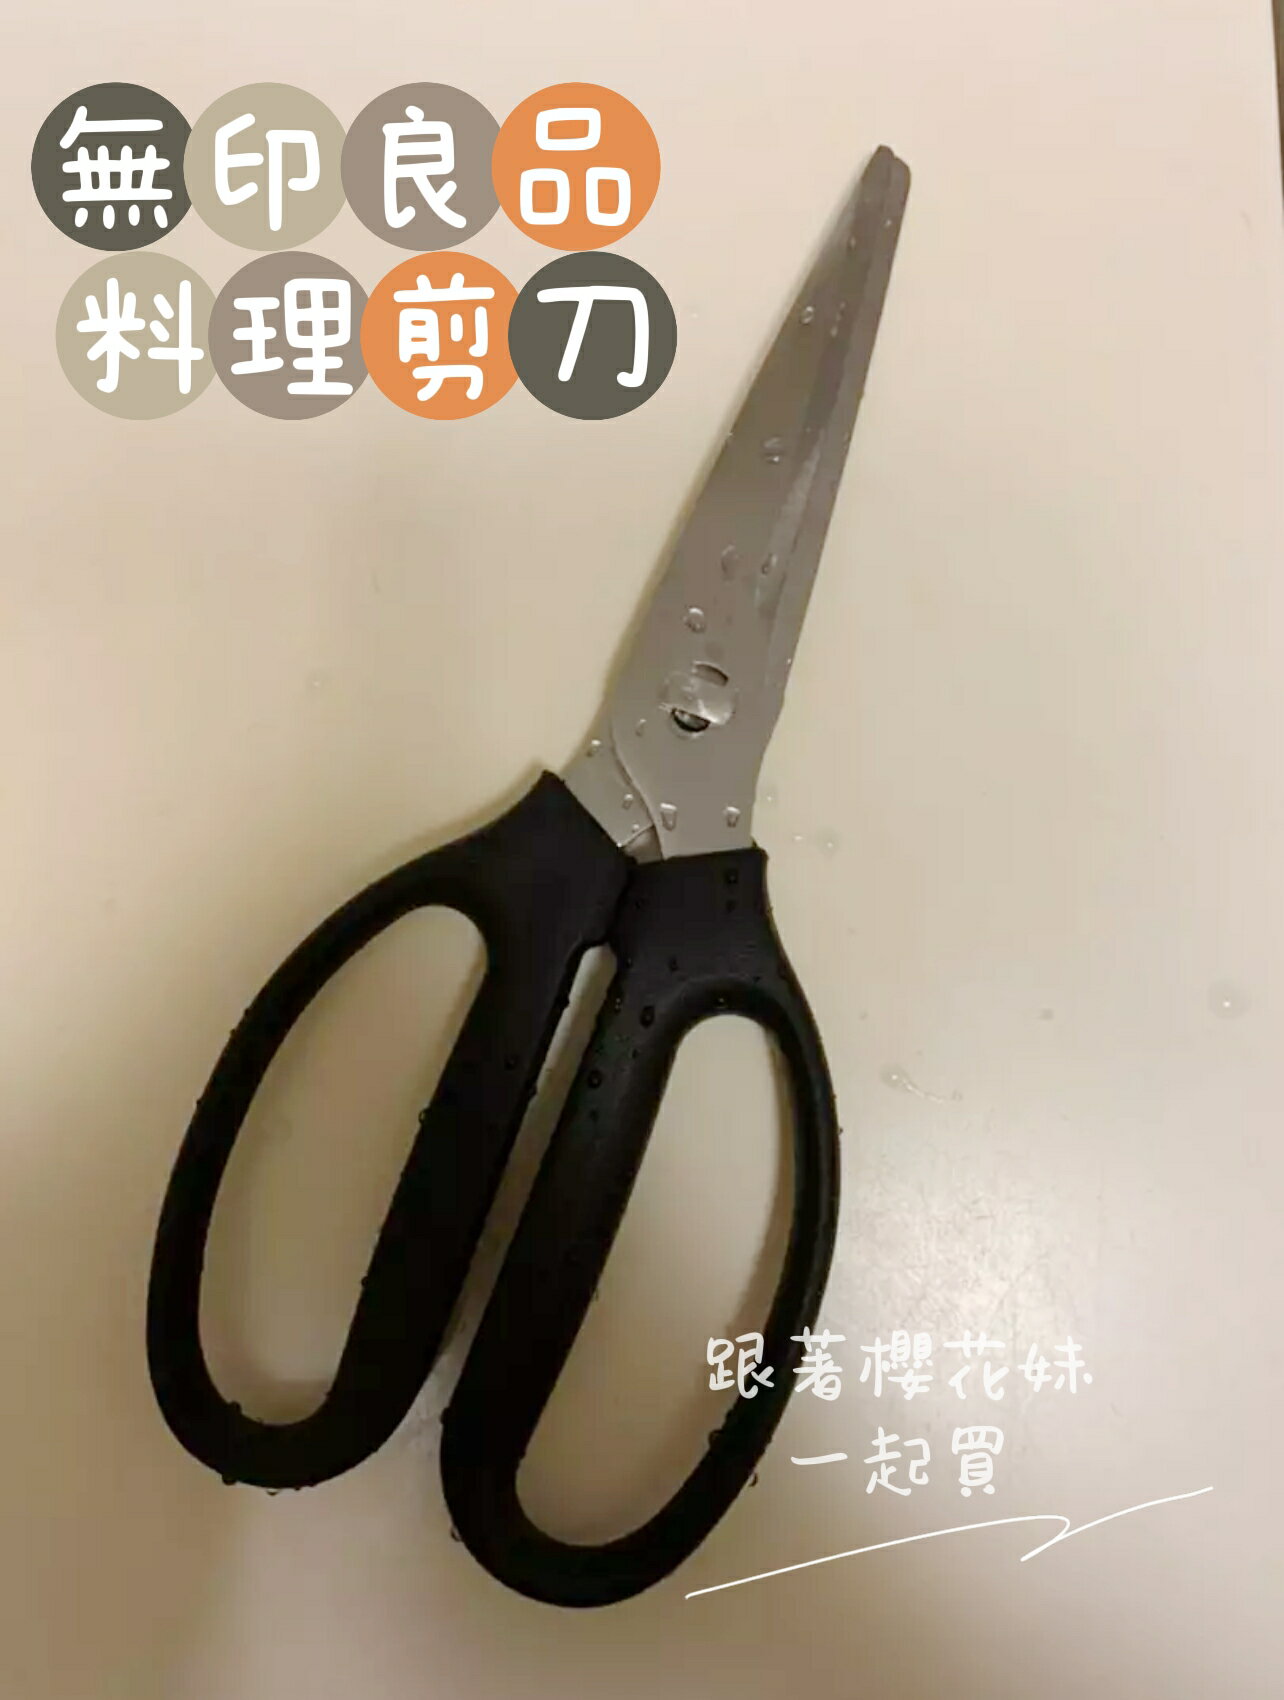 日本無印良品 廚房剪刀 料理用剪刀 ★可拆卸清洗 廚房剪刀★